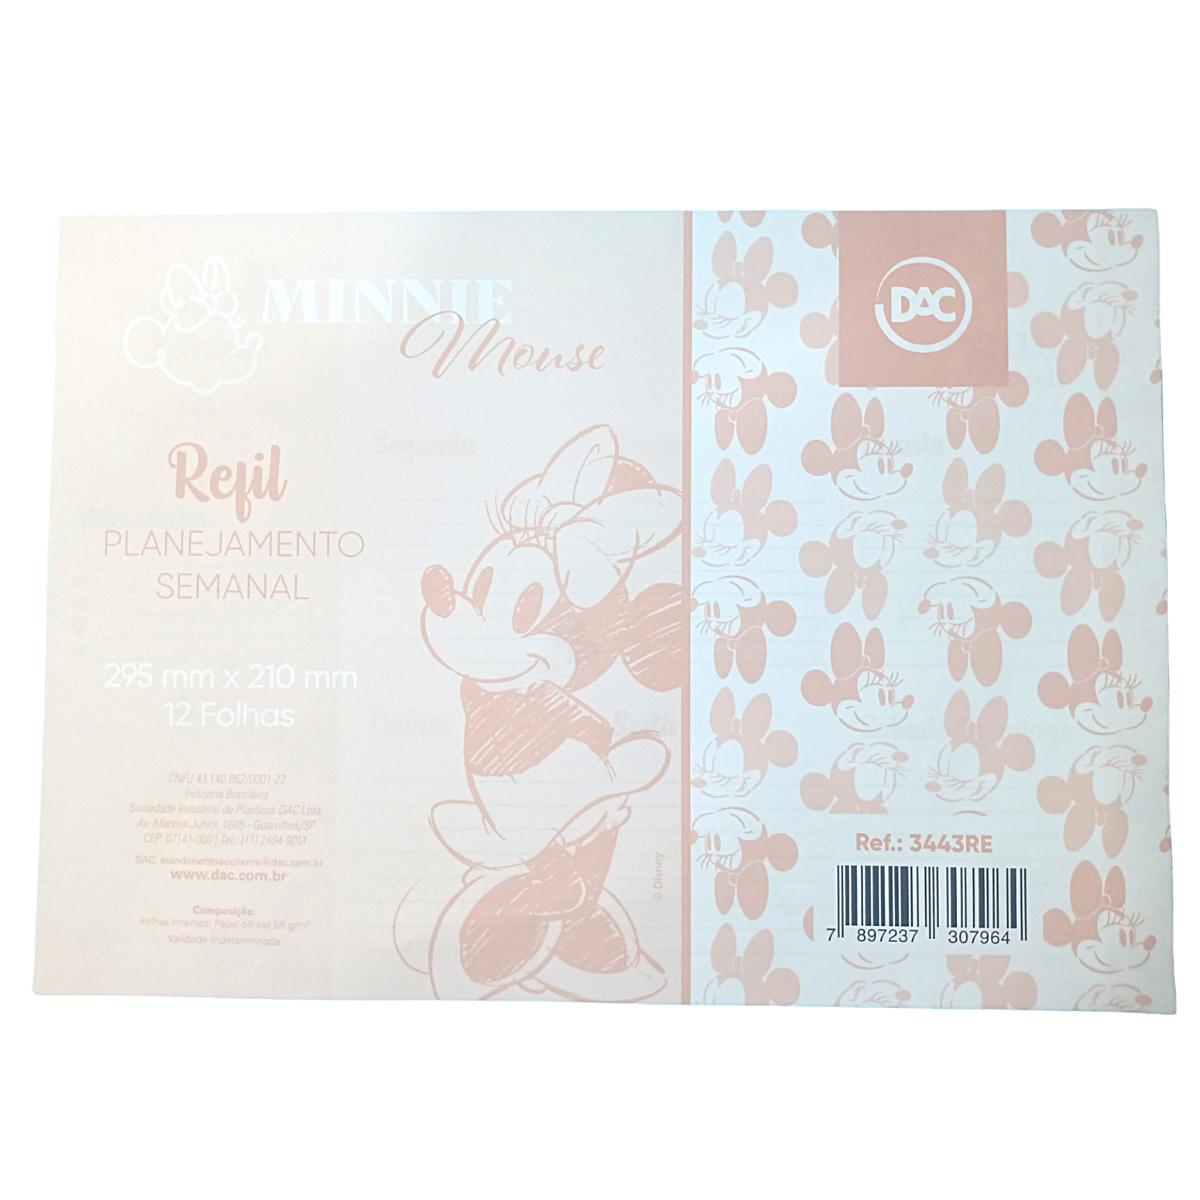 Refil para caderno de prancheta planner semanal Minnie Mouse c/ 12 folhas